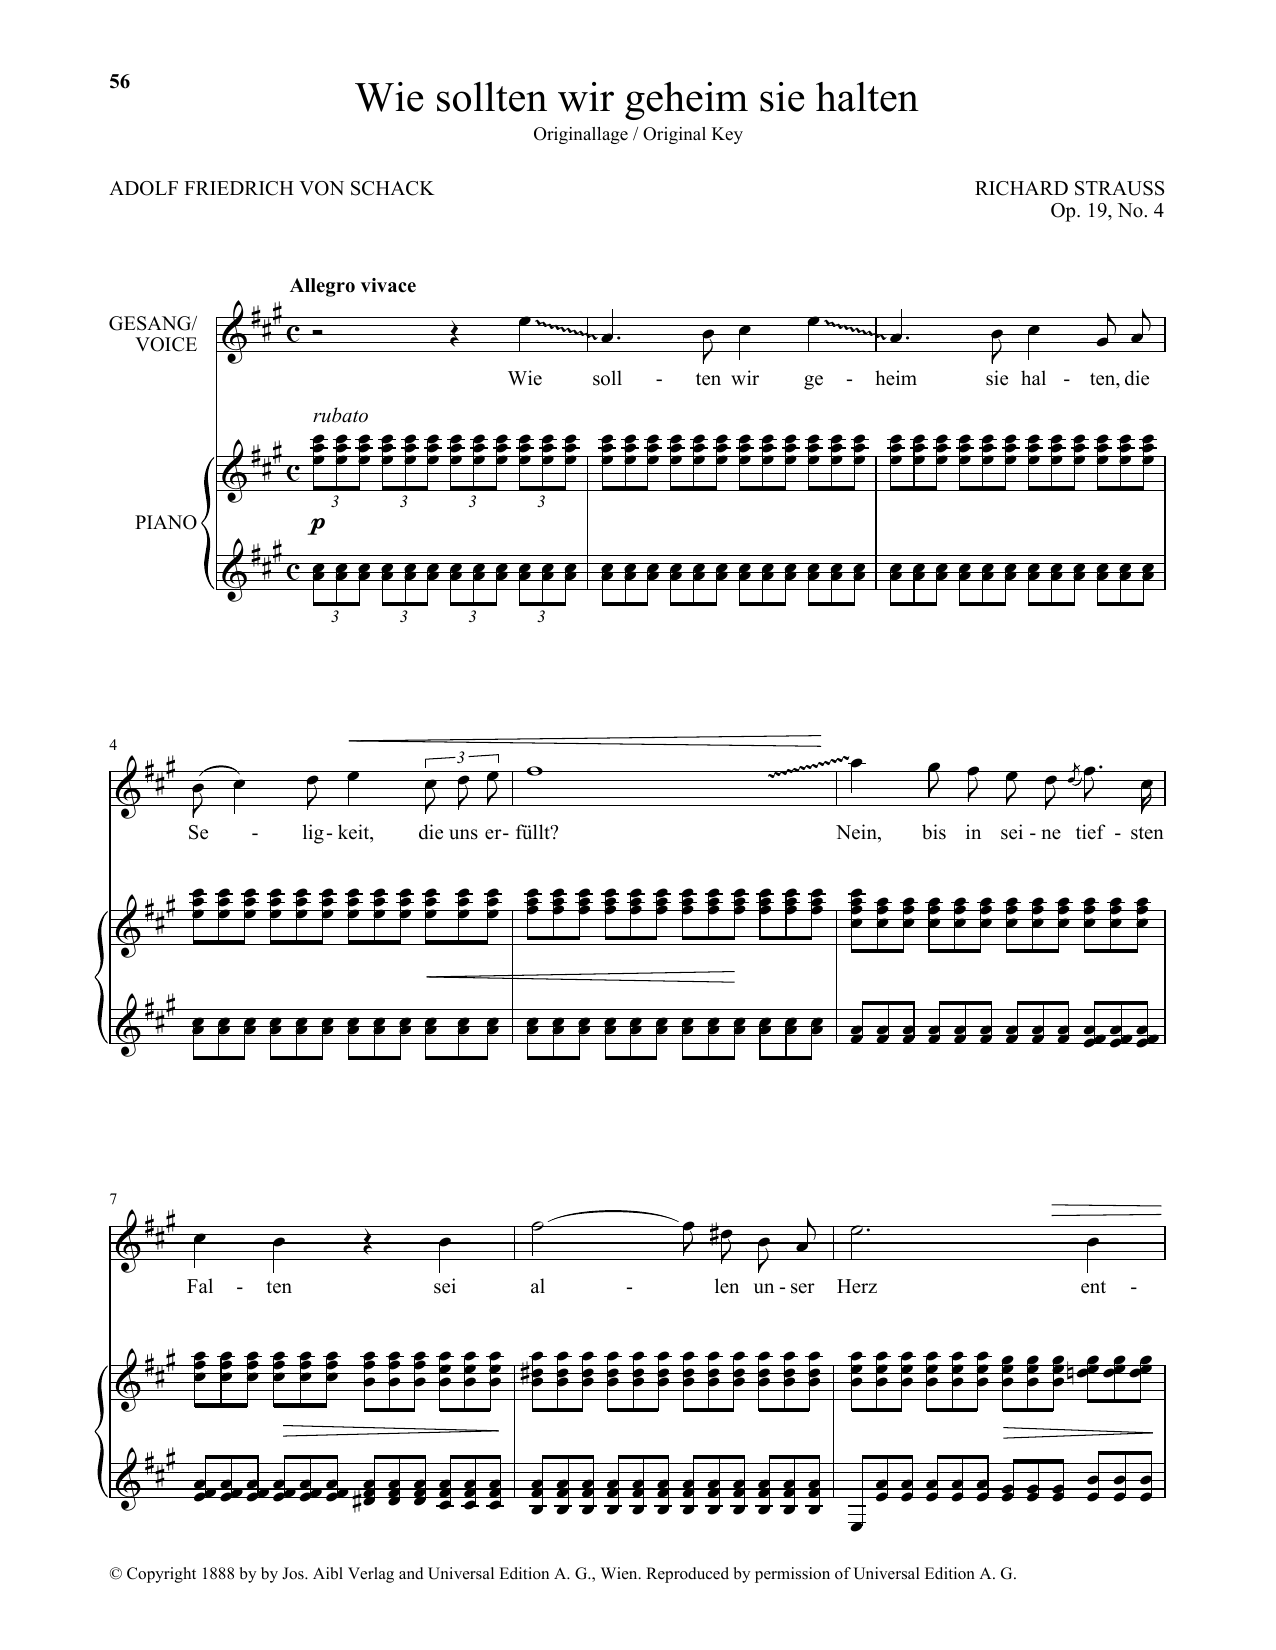 Richard Strauss Wie Sollten Wir Geheim Sie Halten (High Voice) Sheet Music Notes & Chords for Piano & Vocal - Download or Print PDF